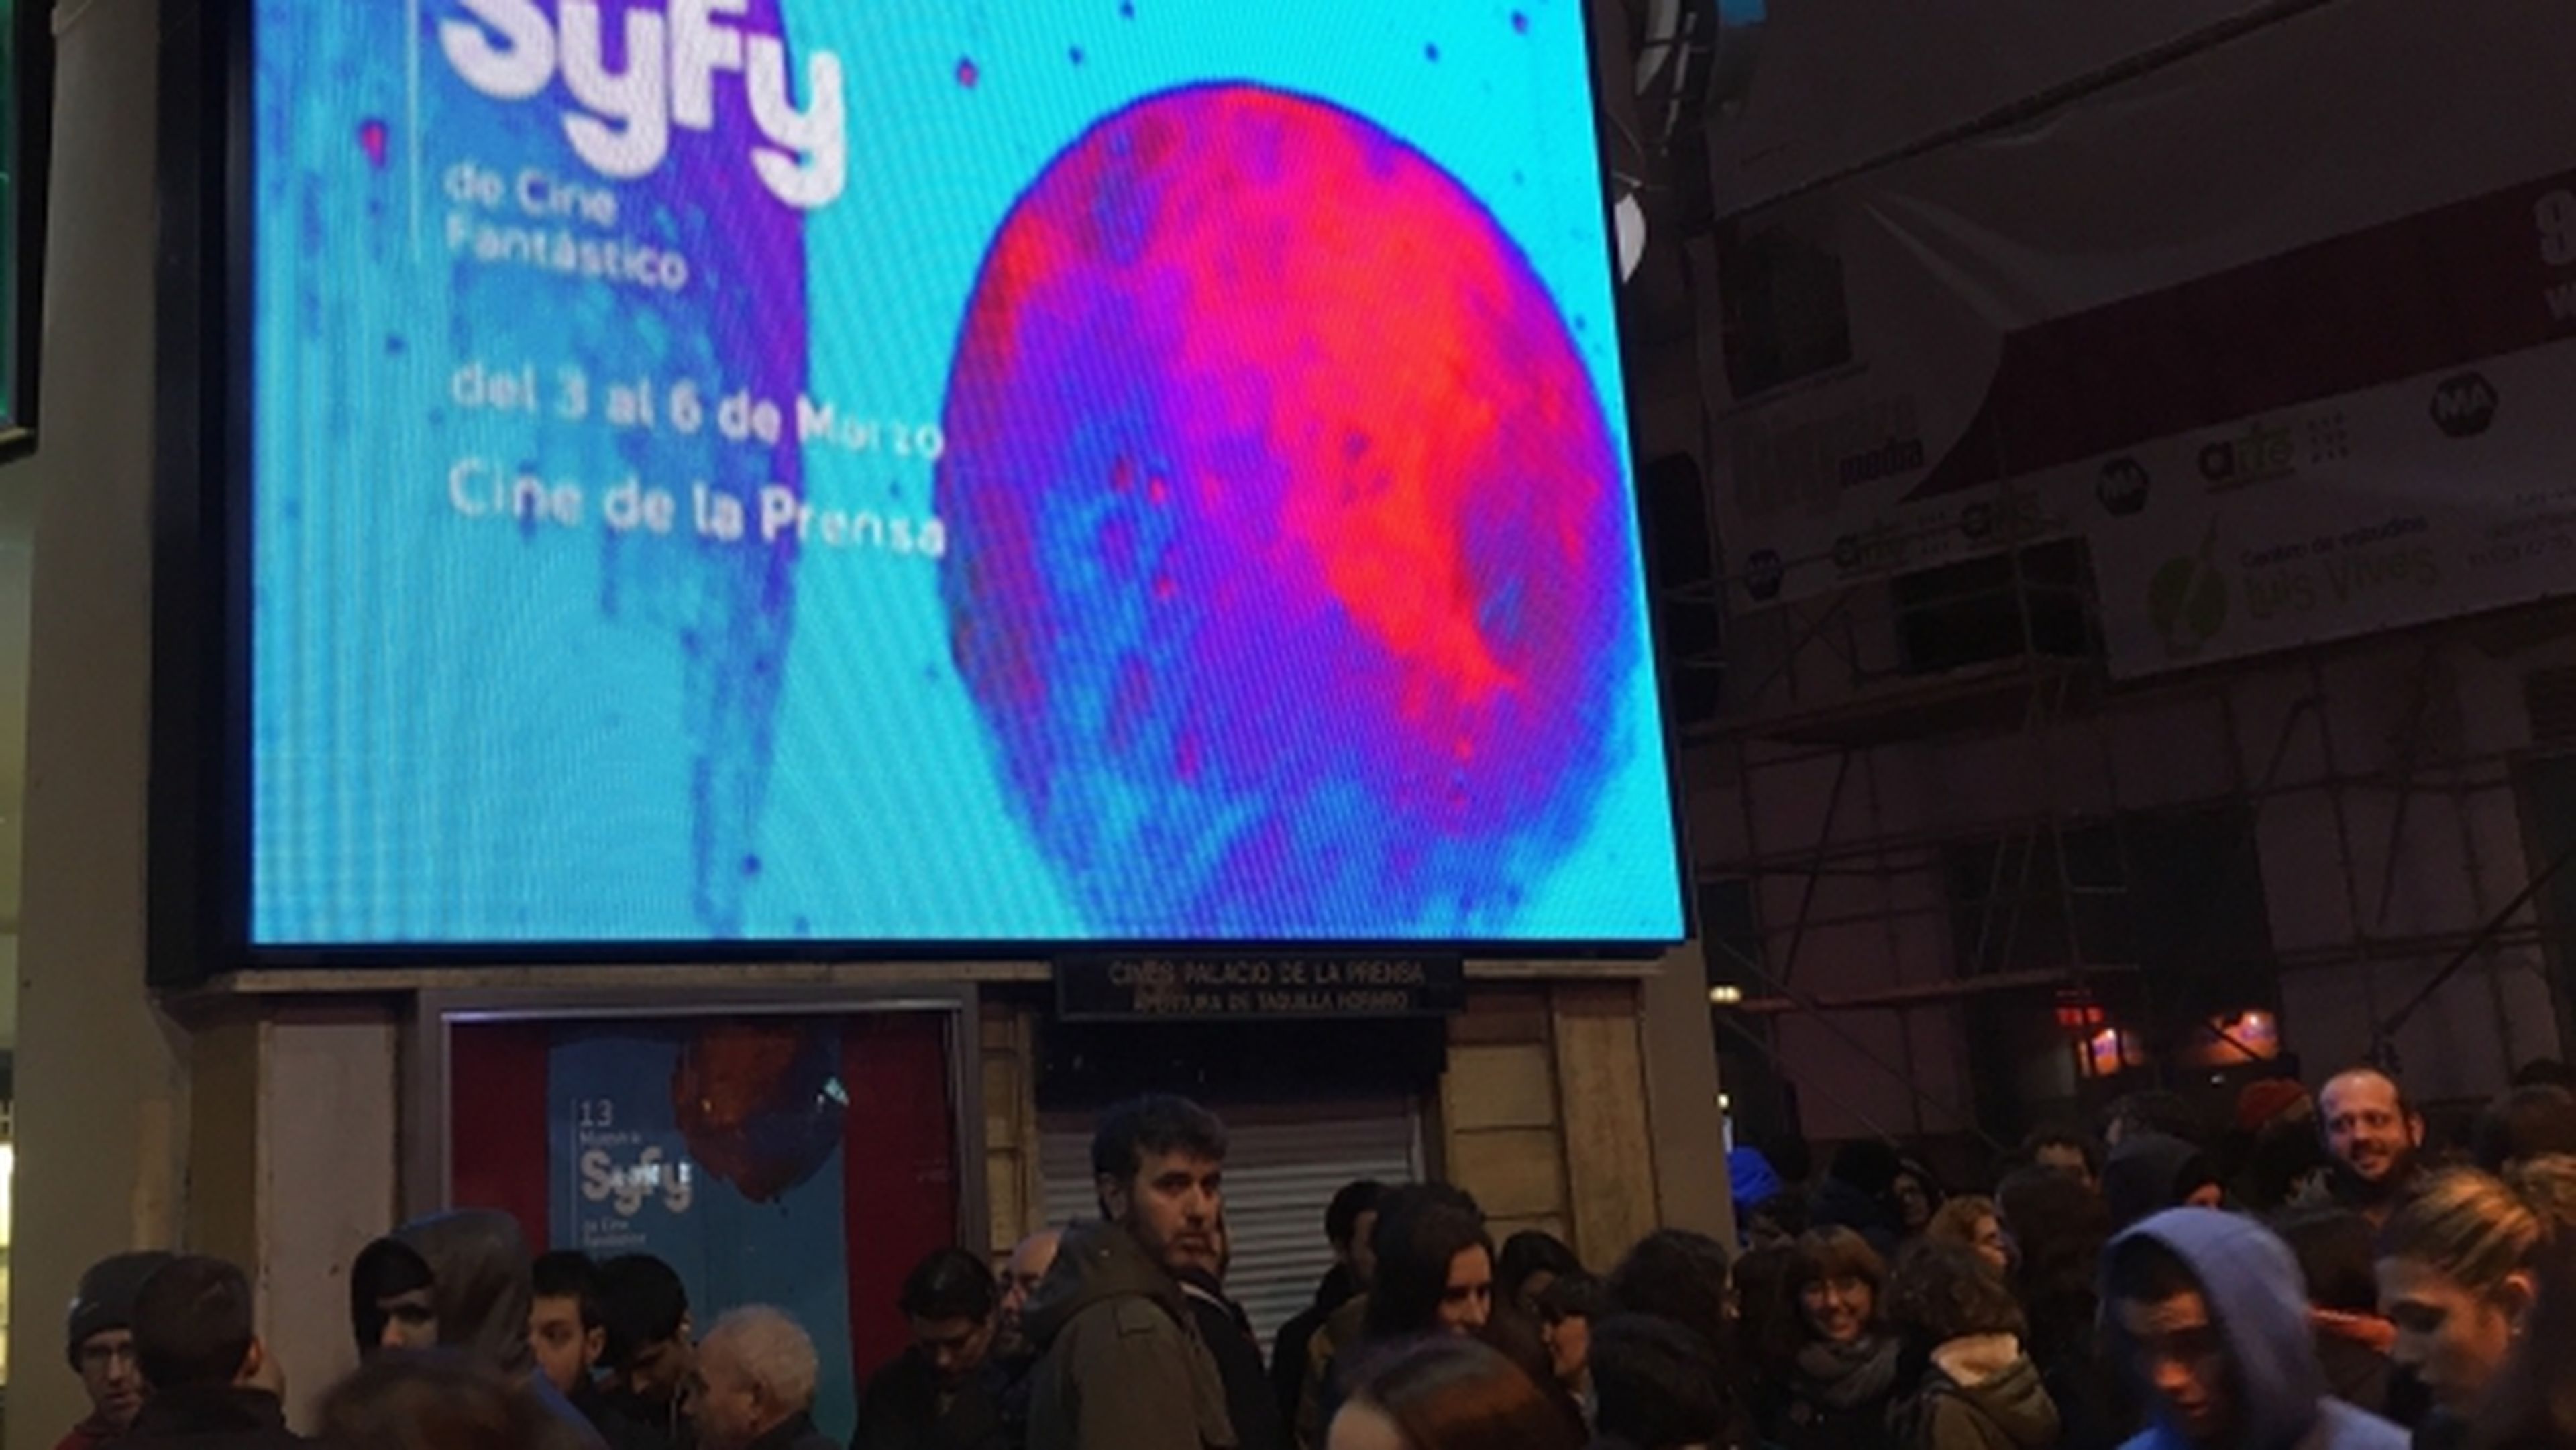 Muestra Syfy – Eli Roth, Bowie y Buffy, en la fiesta del fantástico de Madrid